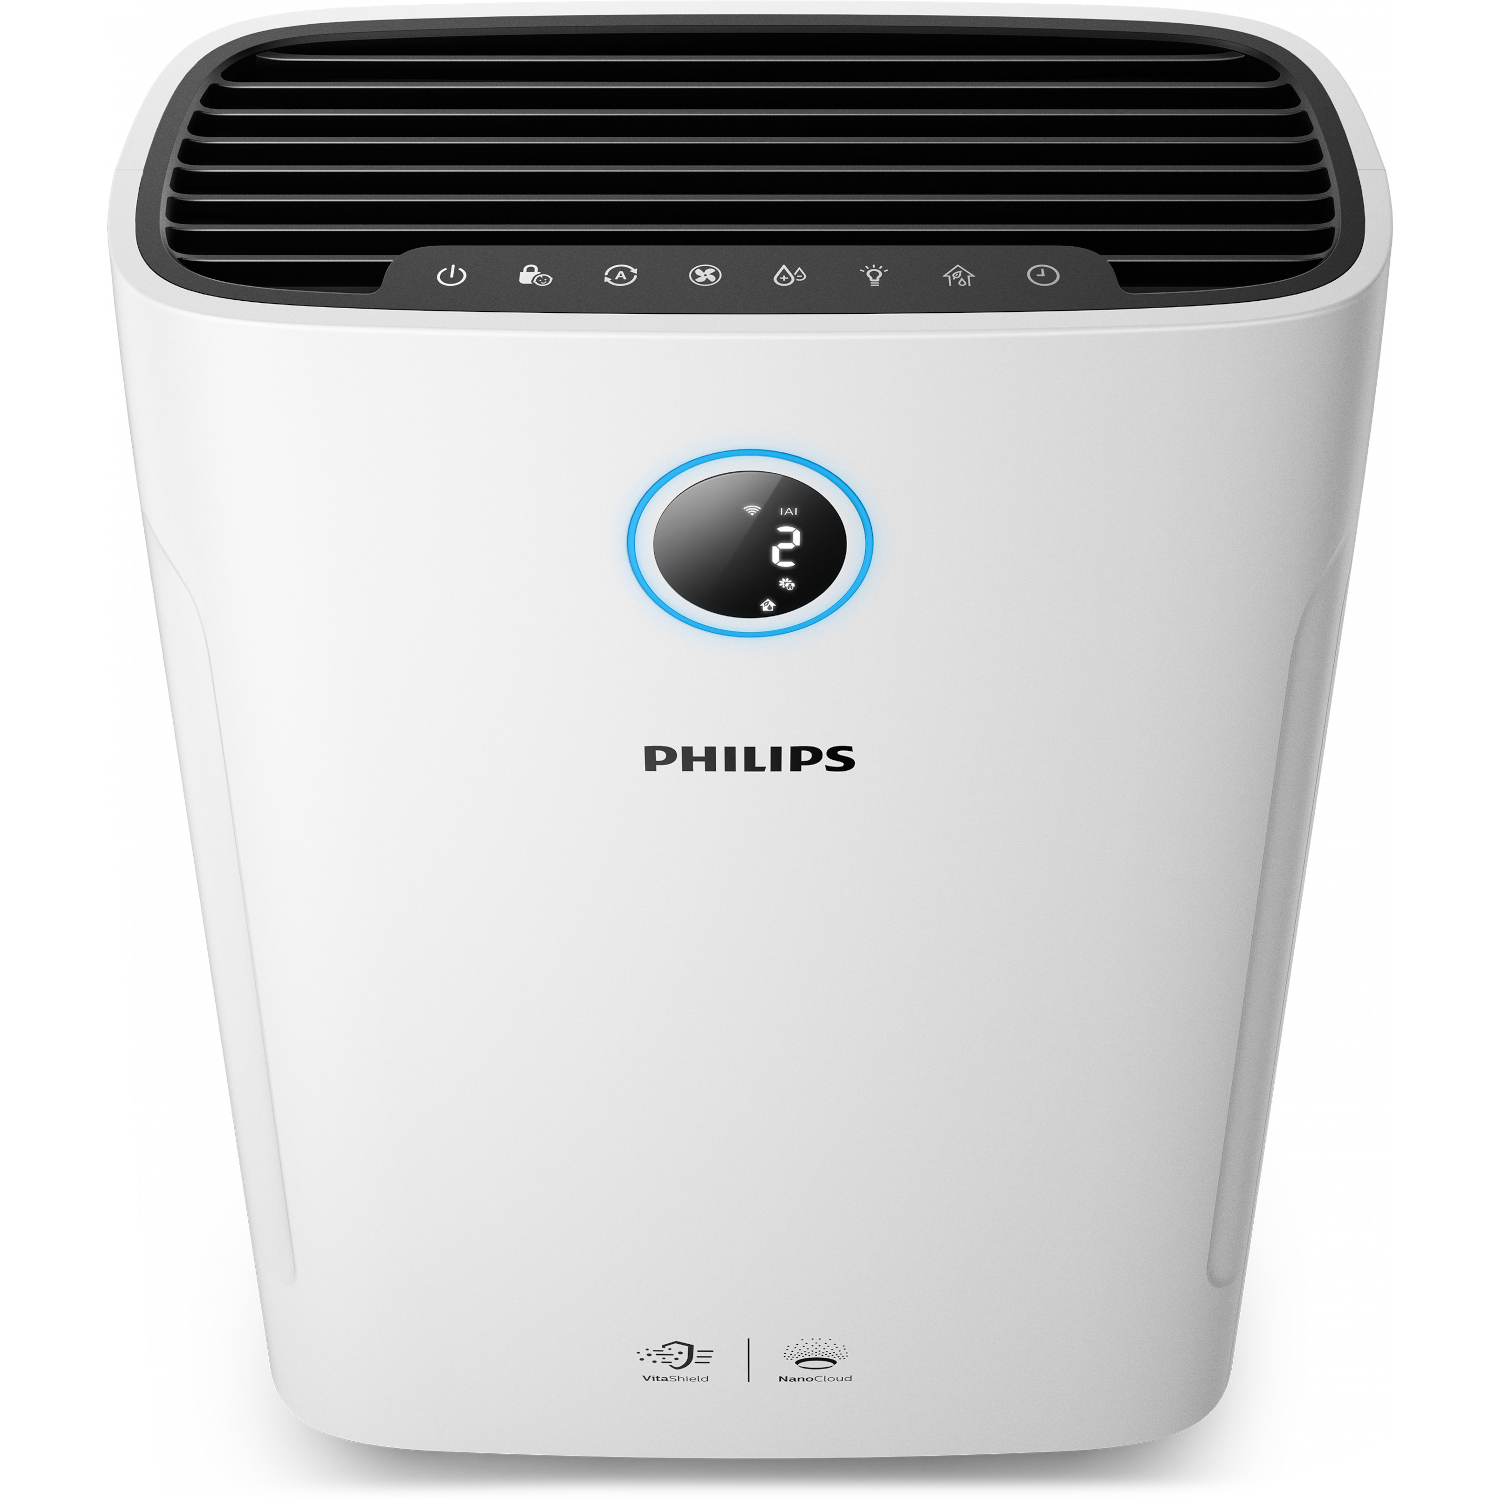 Купить очиститель воздуха для комнаты. Климатический комплекс Philips ac2729. Очиститель воздуха Philips ac2729/51. Воздухоувлажнитель-воздухоочиститель Philips ac3829/10. Увлажнитель воздуха Philips ac2729.